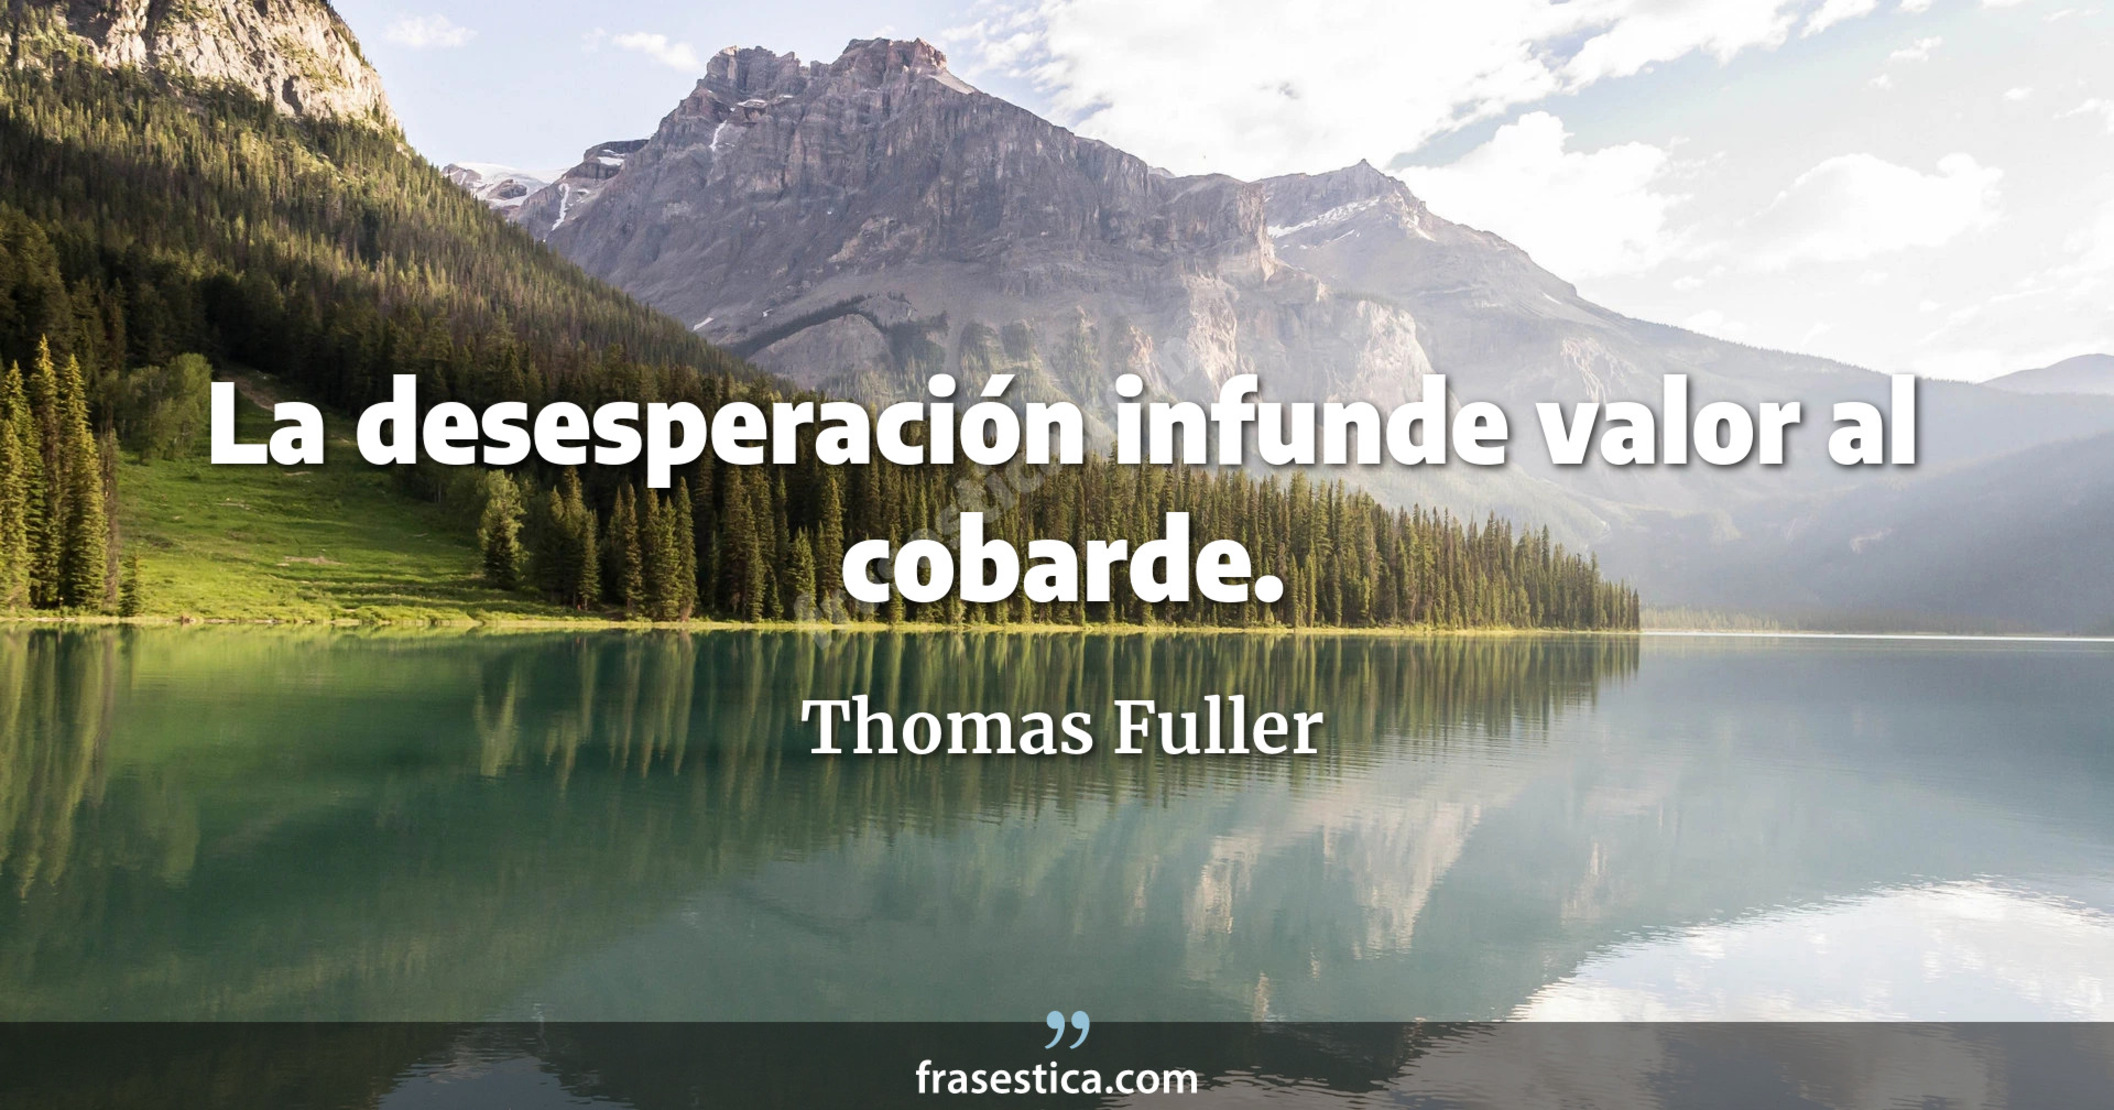 La desesperación infunde valor al cobarde. - Thomas Fuller